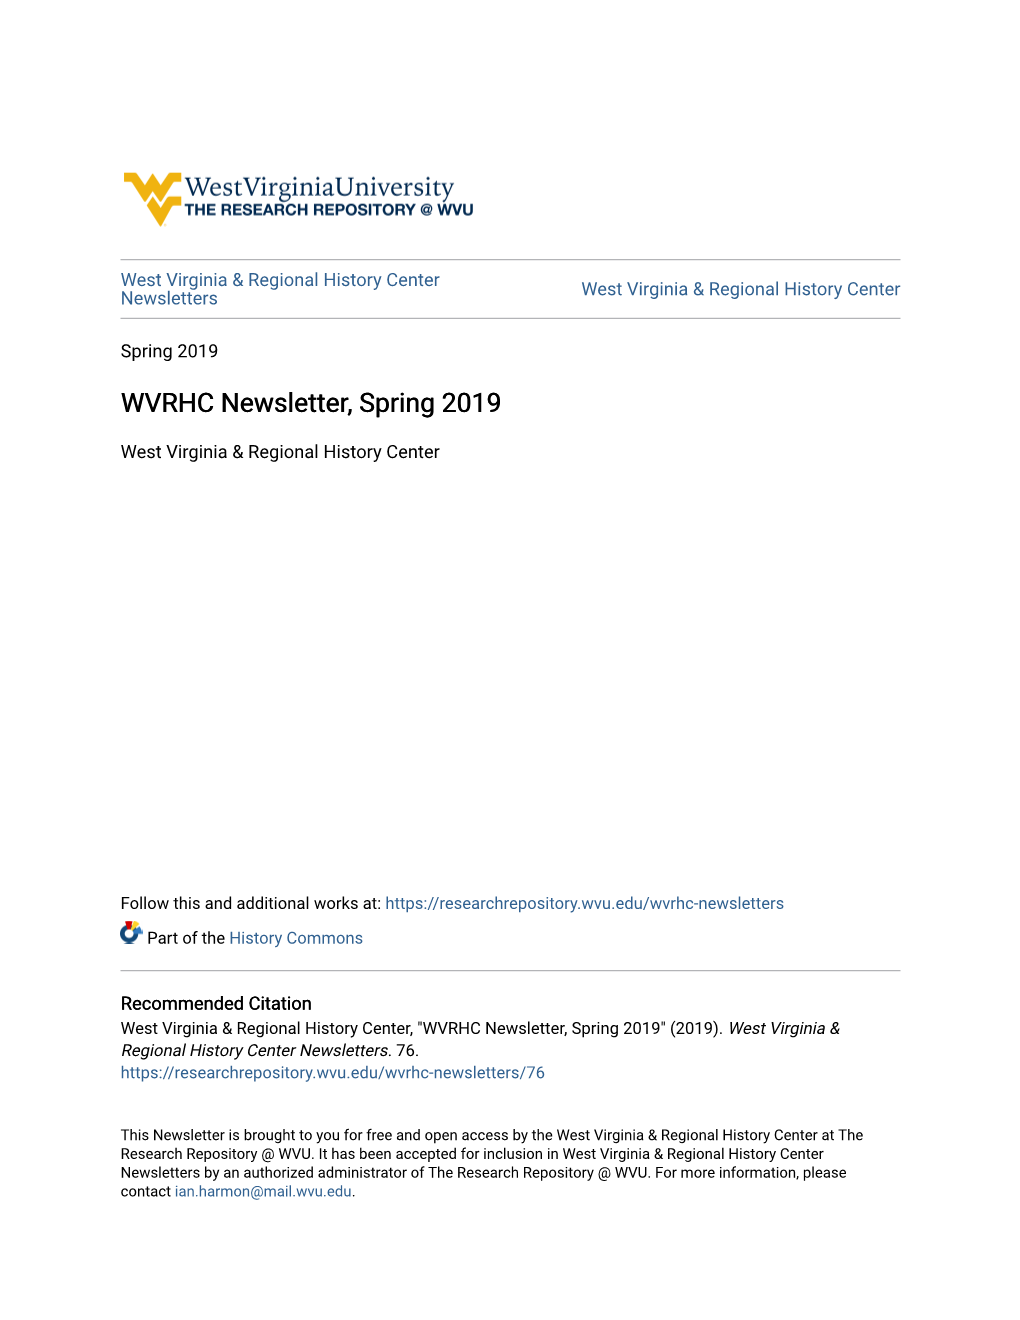 WVRHC Newsletter, Spring 2019